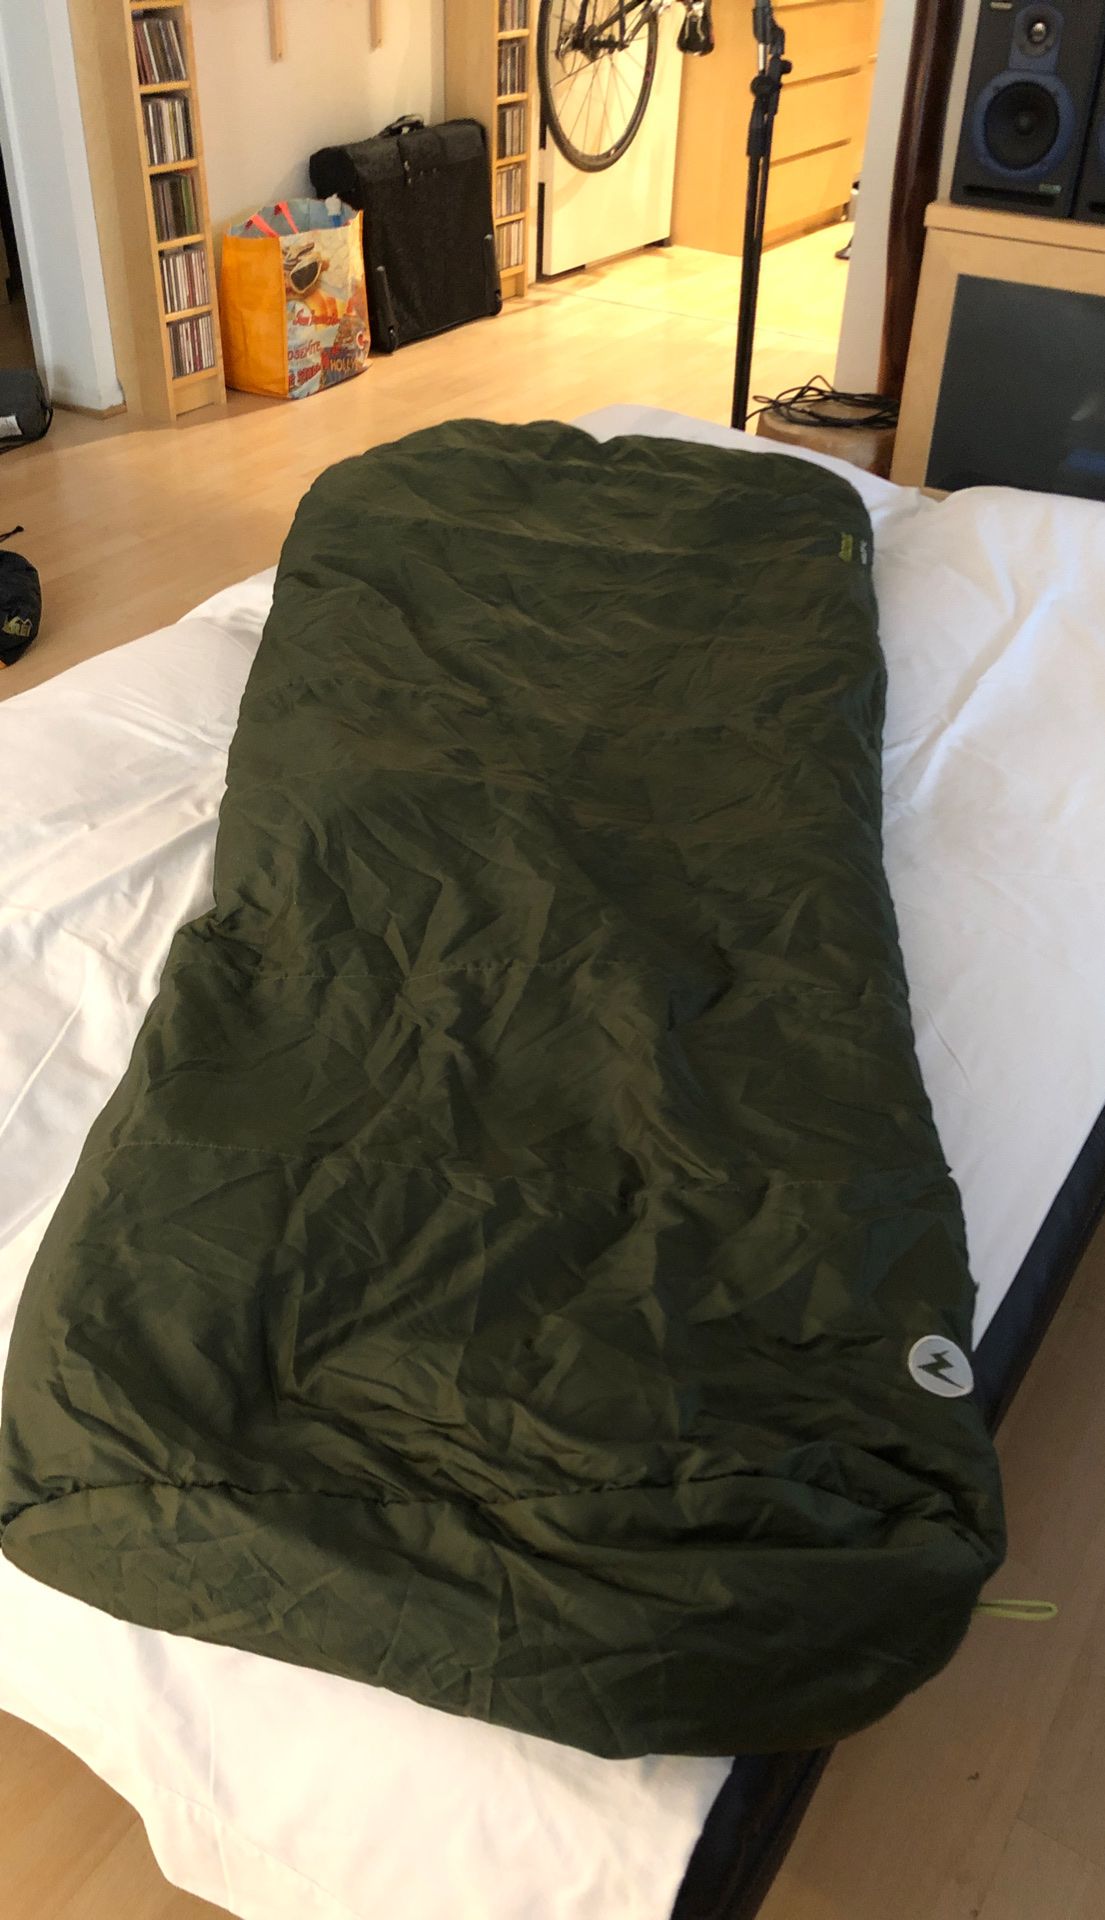 Marmot sleeping bag